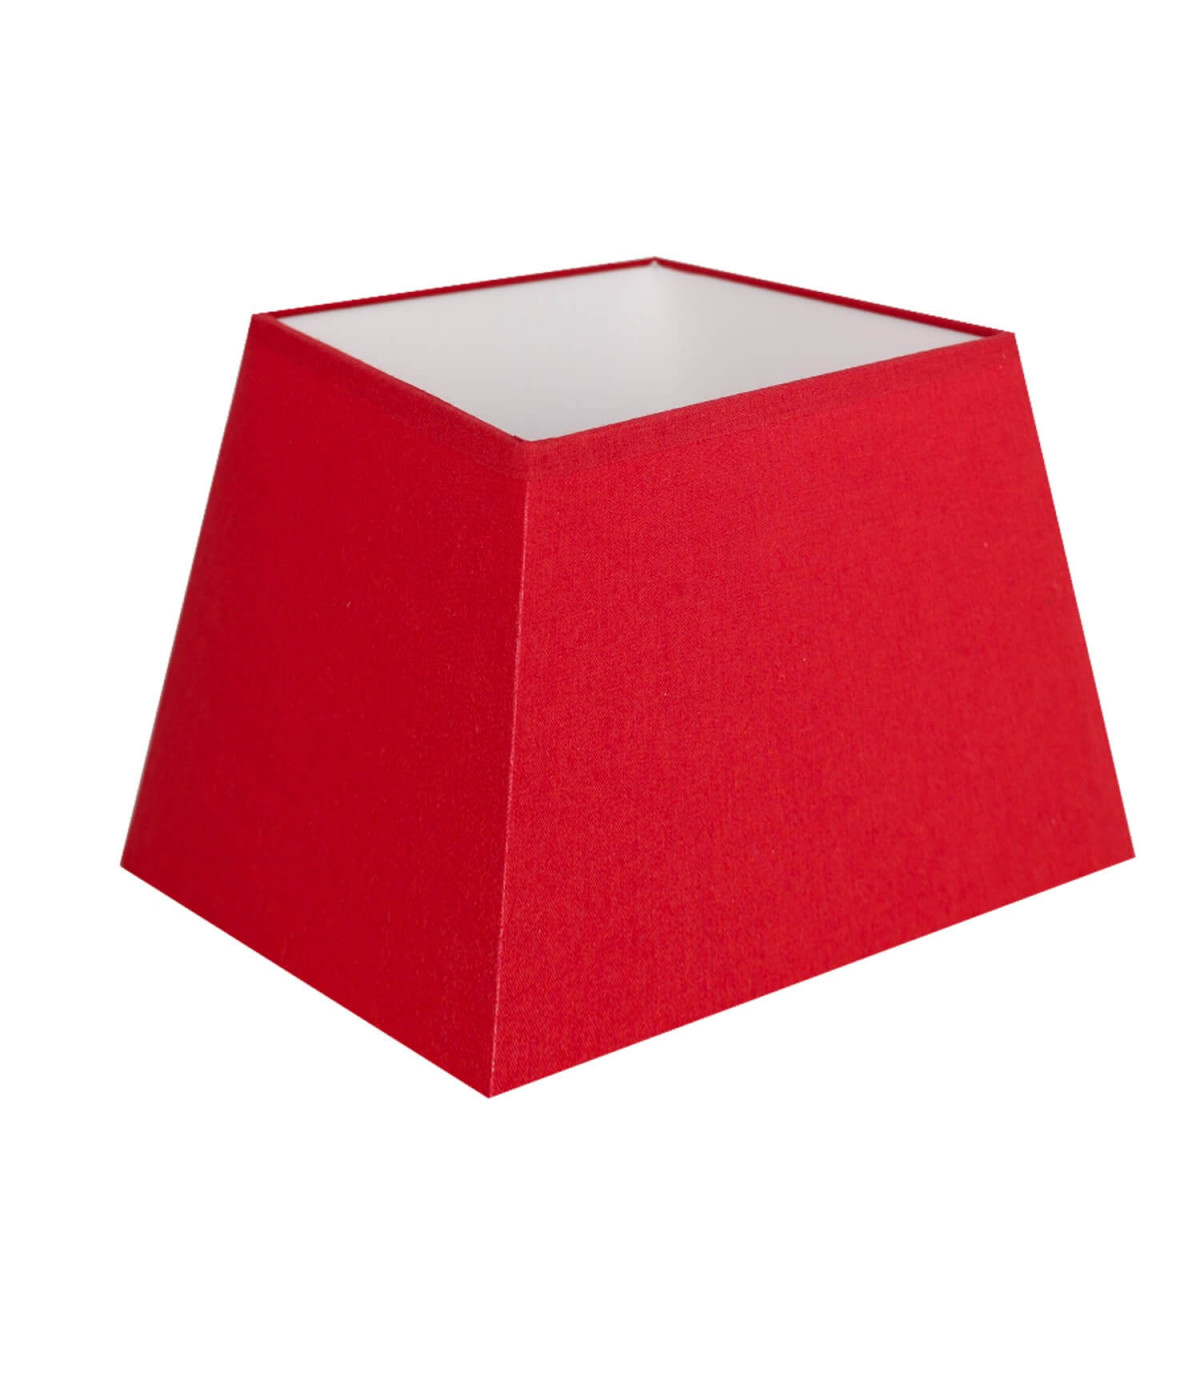 Tonalidade quadrada piramidal vermelha